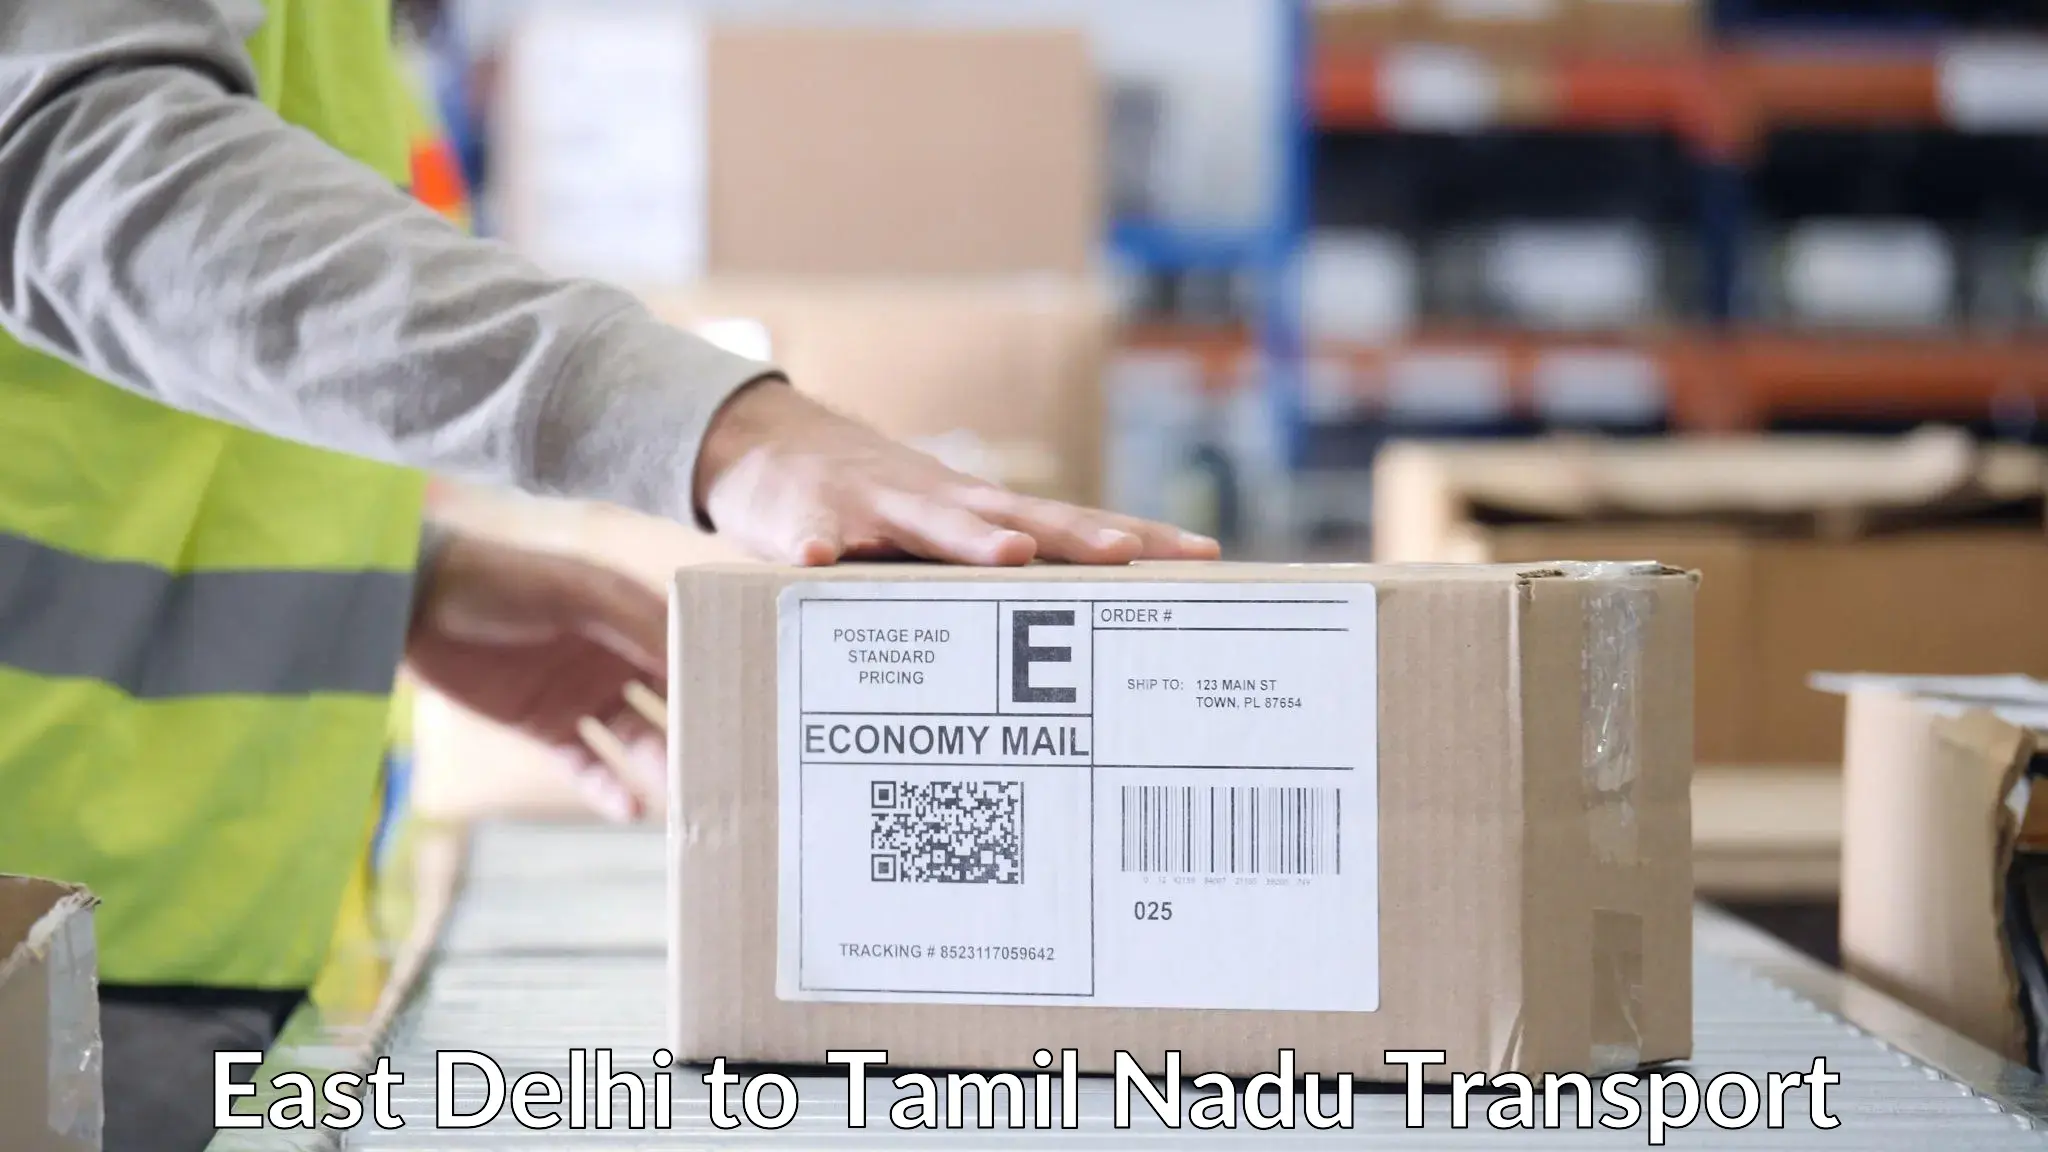 Nearest transport service East Delhi to Tamil Nadu